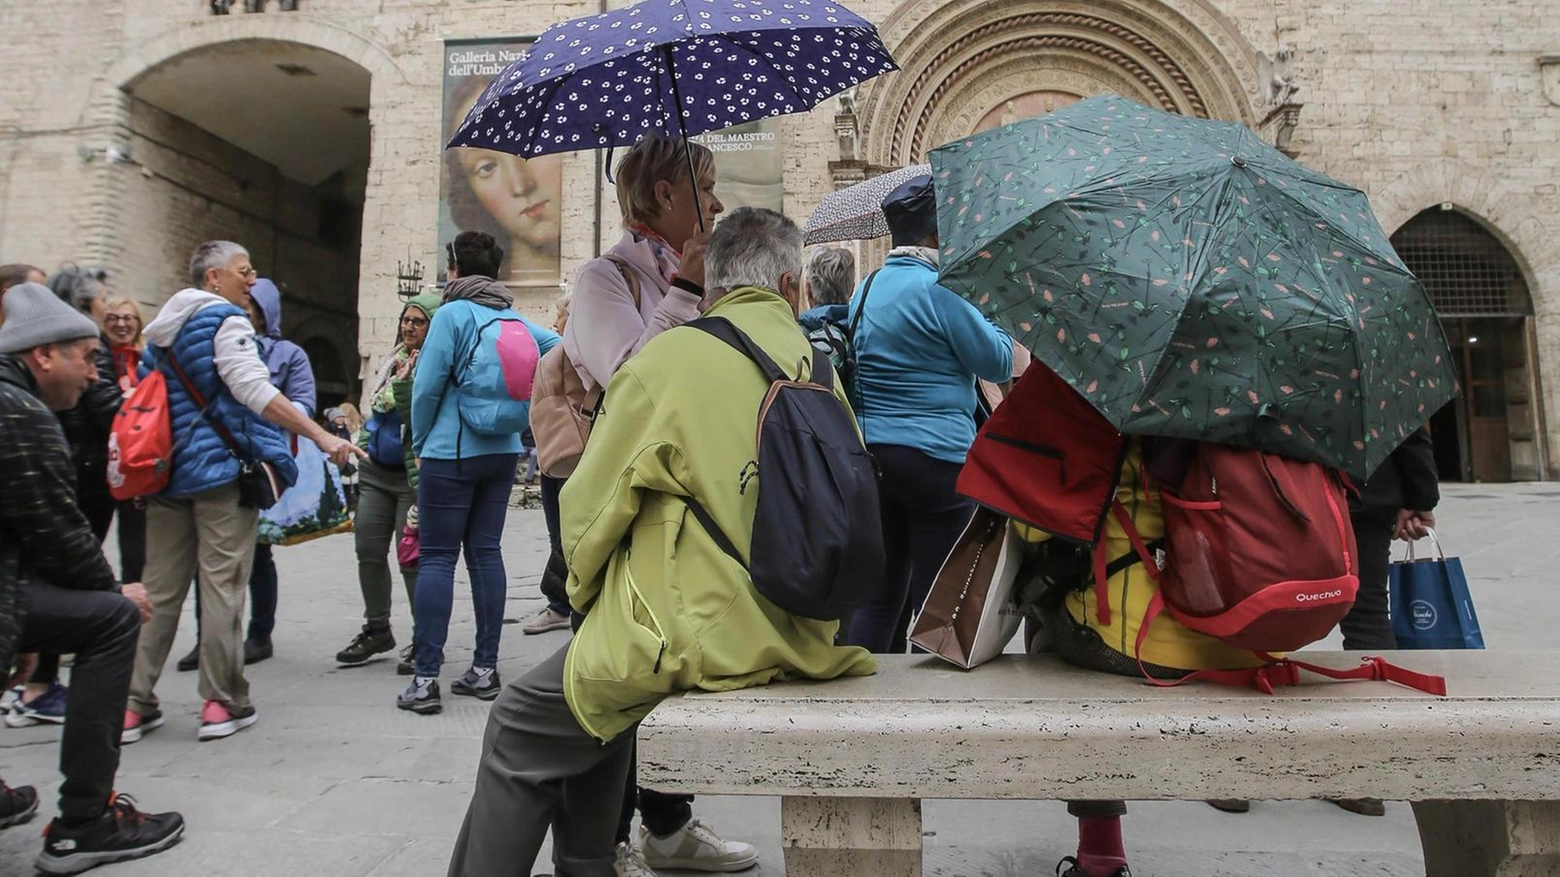 Nonostante le temperature in picchiata e gli ombrelli aperti, l’Umbria registra un buon numero di presenze. Federalberghi: "Non siamo al 100% dell’occupazione delle strutture come previsto. Ma ci accontentiamo".